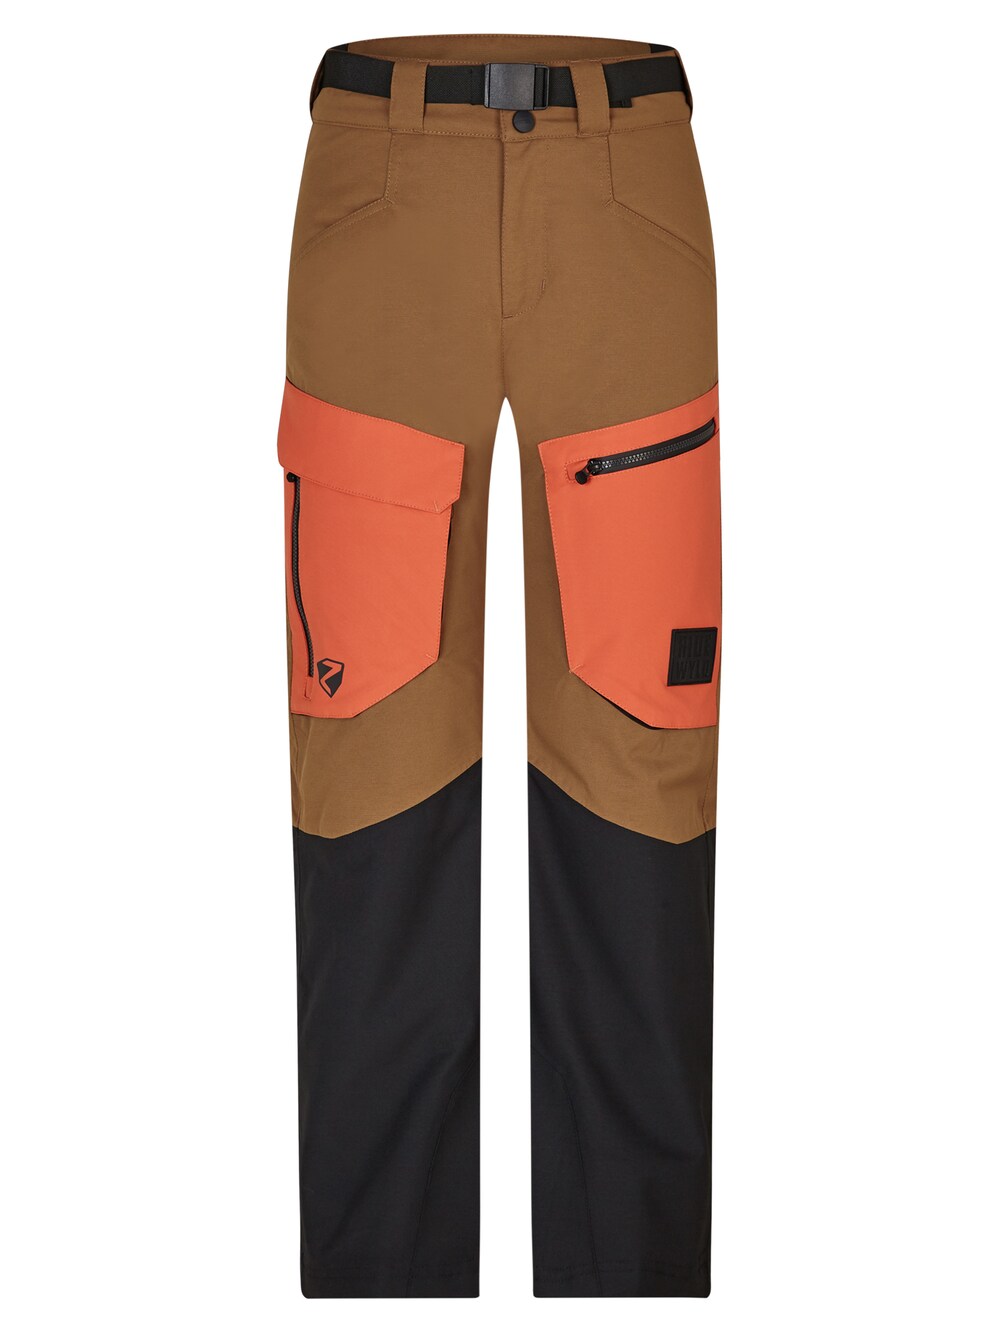 Обычные тренировочные брюки Ziener Akando, коричневый